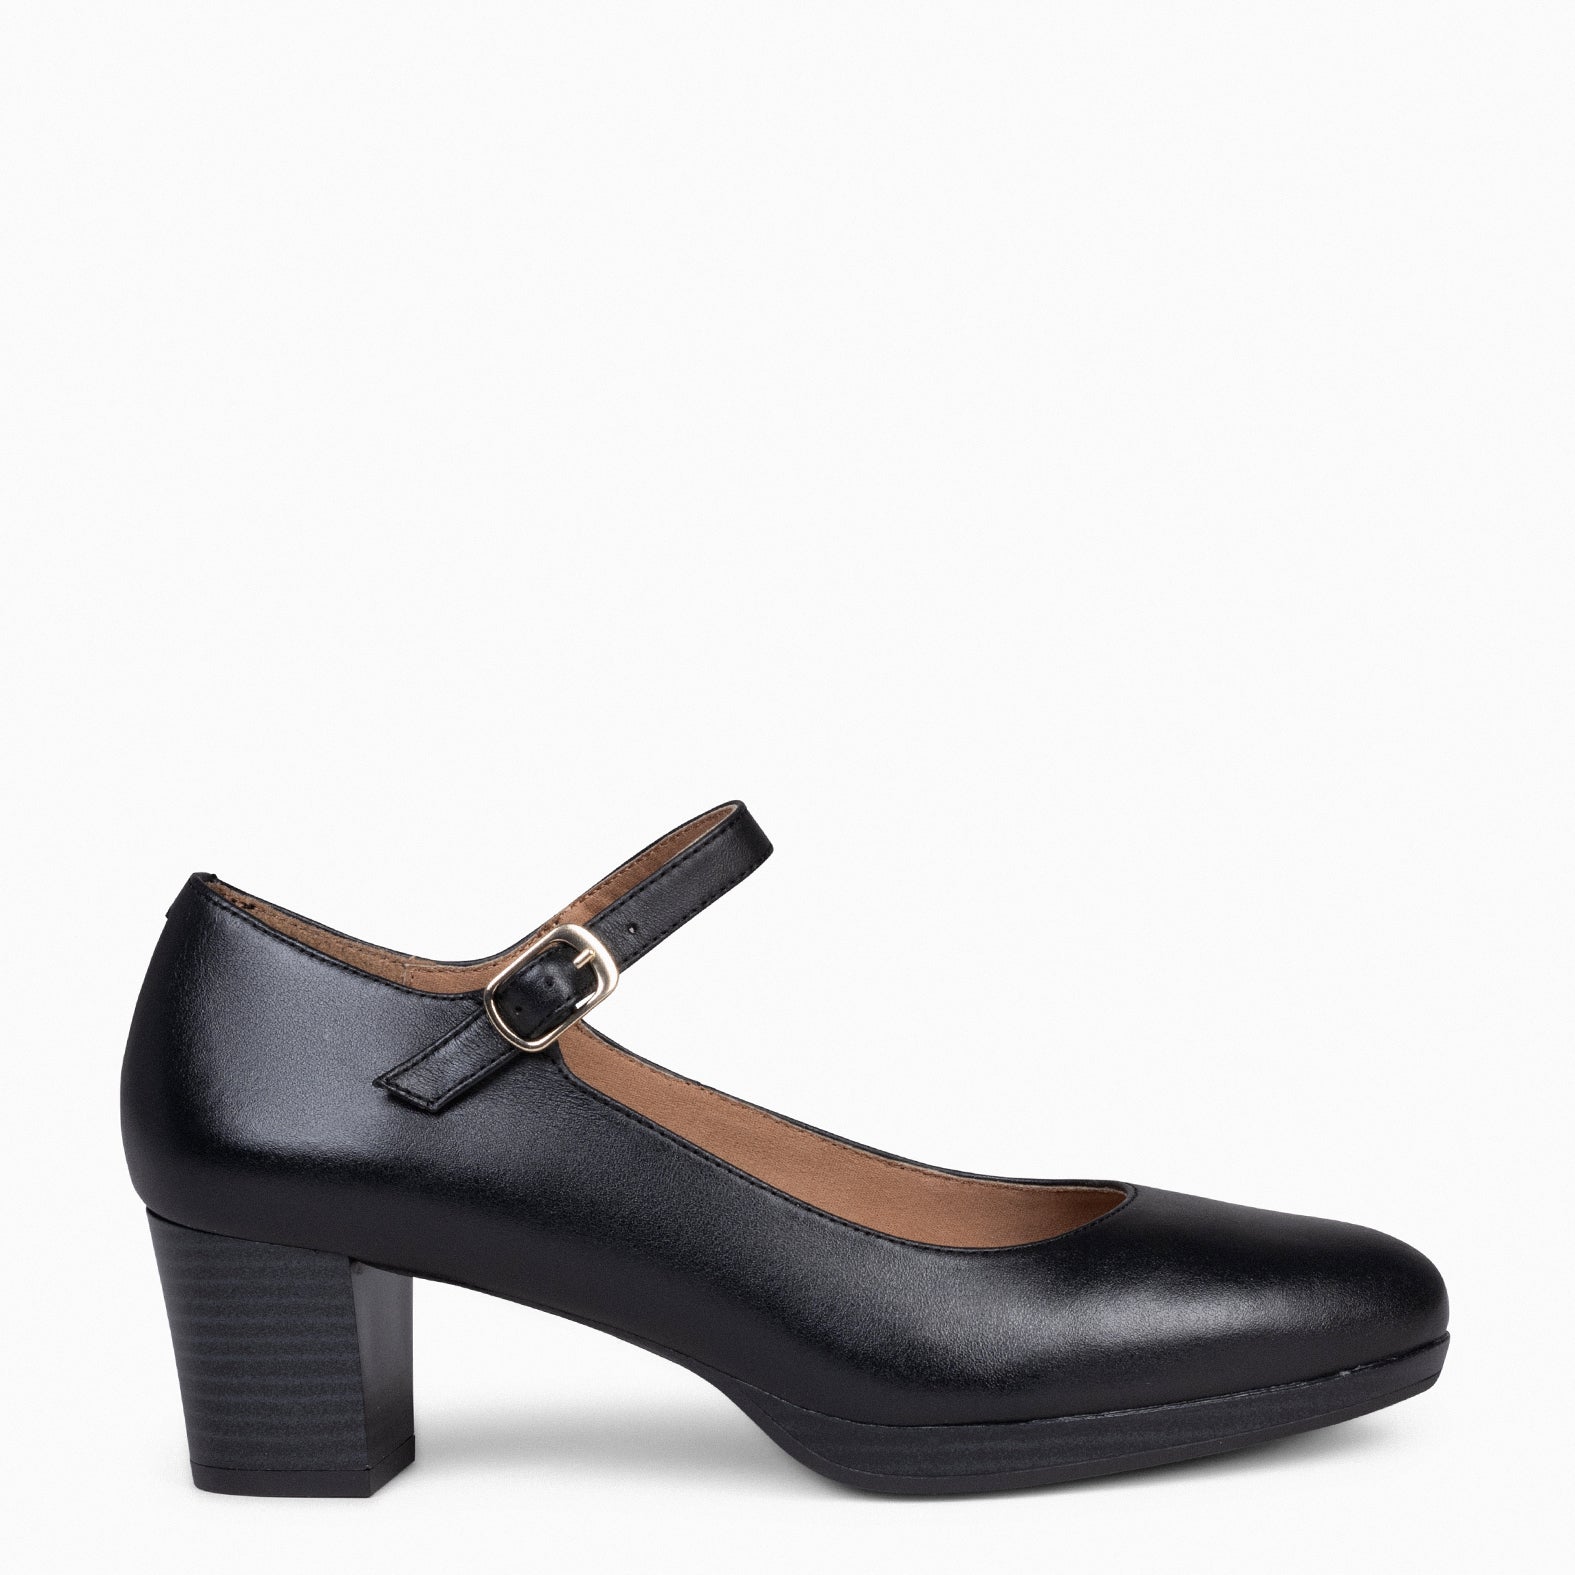 AZAFATA PULSERA – Zapatos de mujer con plataforma y tacón bajo NEGRO